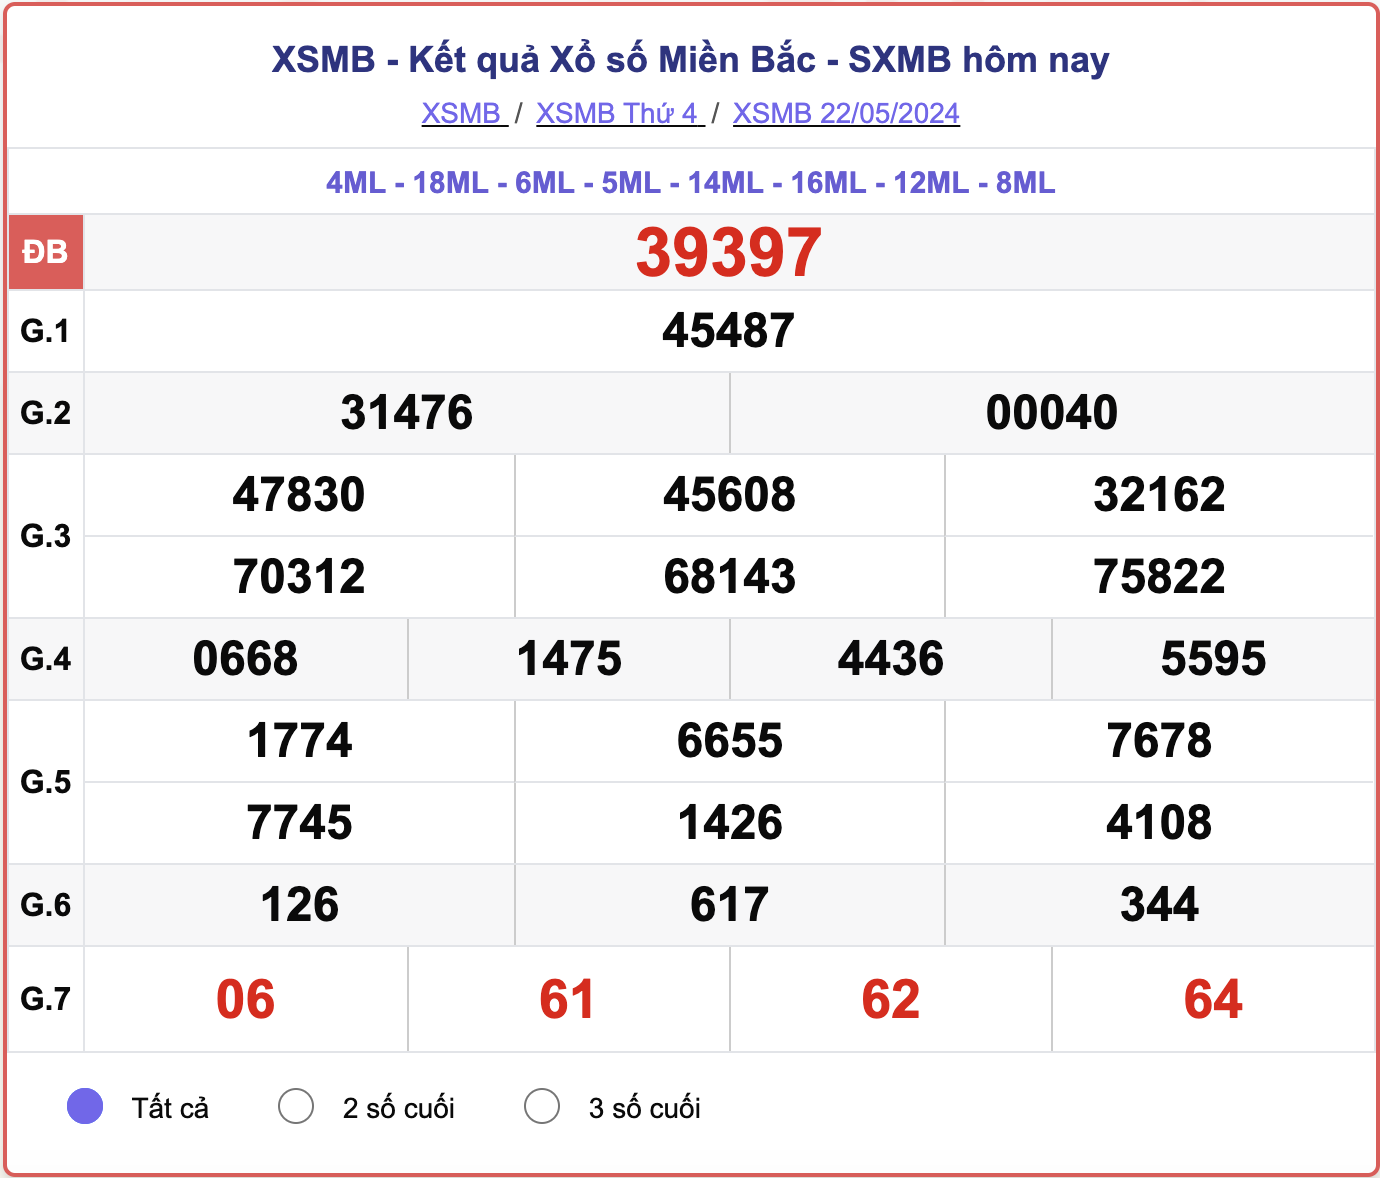 XSMB 24/5 - Kết quả xổ số miền Bắc hôm nay 24/5/2024 - KQXSMB ngày 24/5- Ảnh 3.